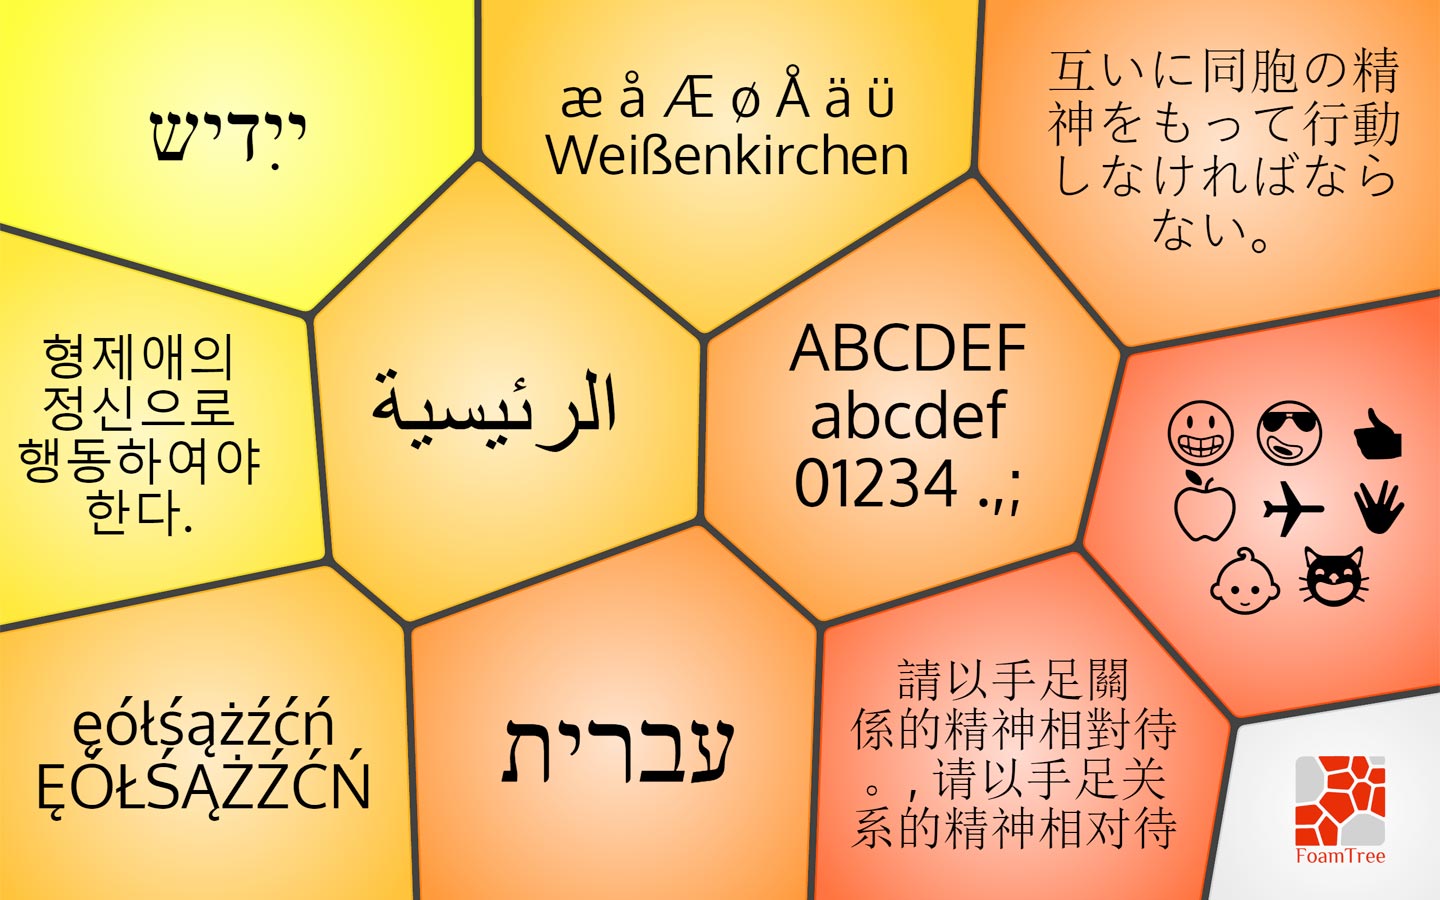 Multilingual and emoji-friendly